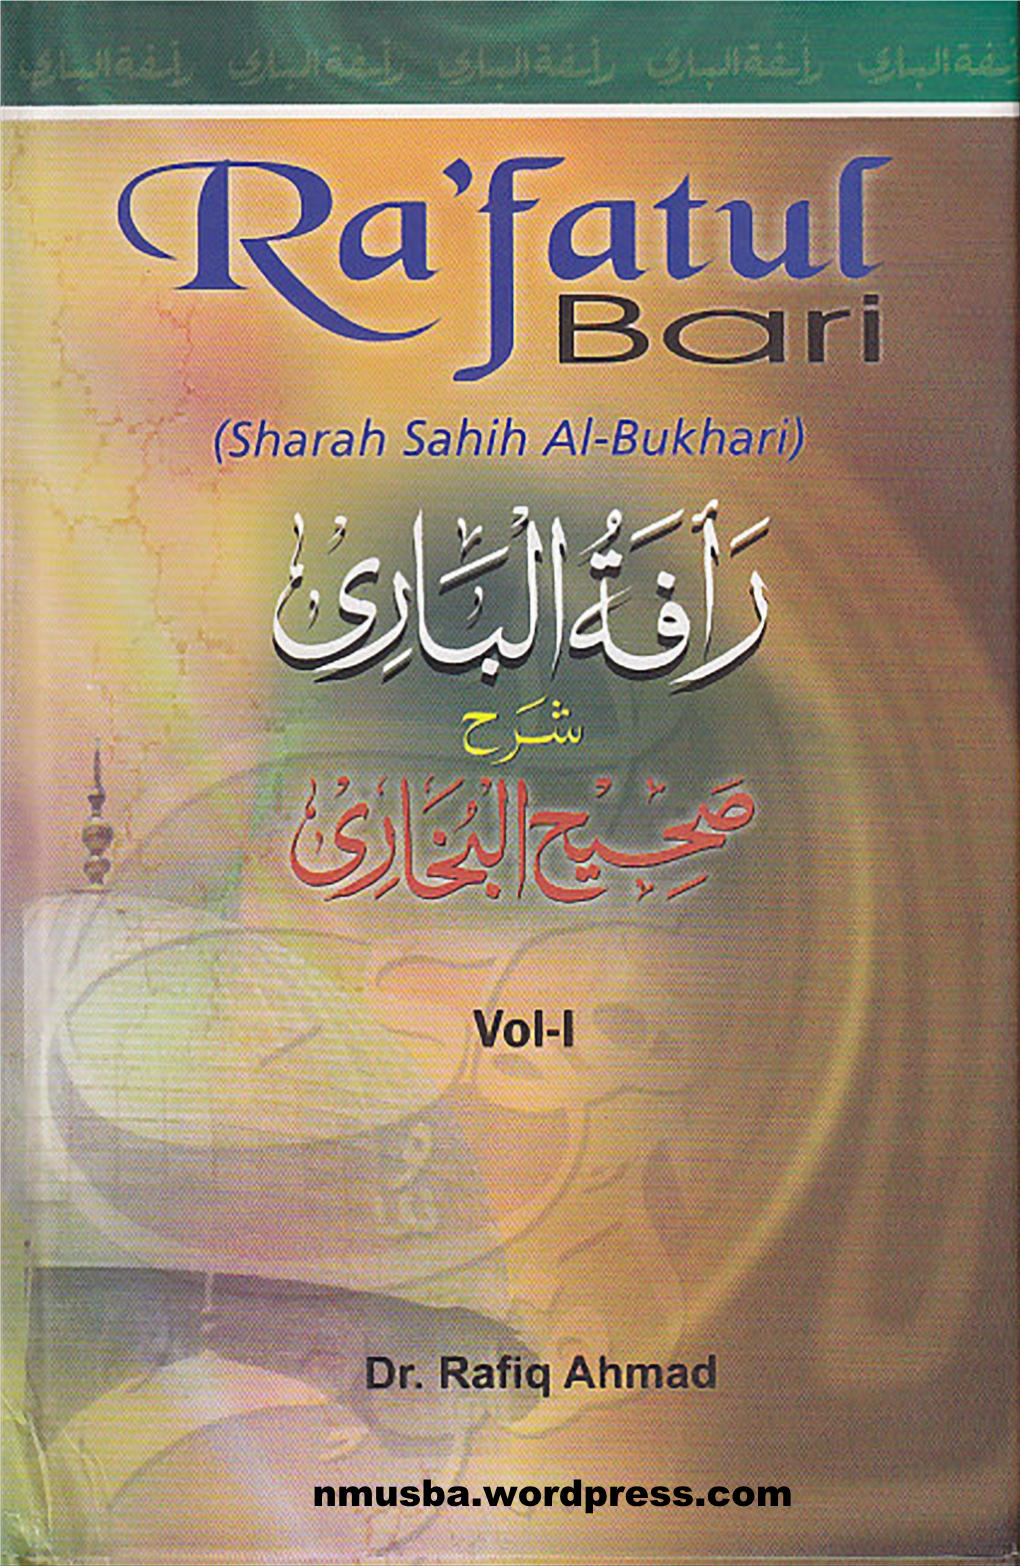 Nmusba.Wordpress.Com Ra'fatul Bari Commentary Sahih Al-Bukhari (Vol-1)